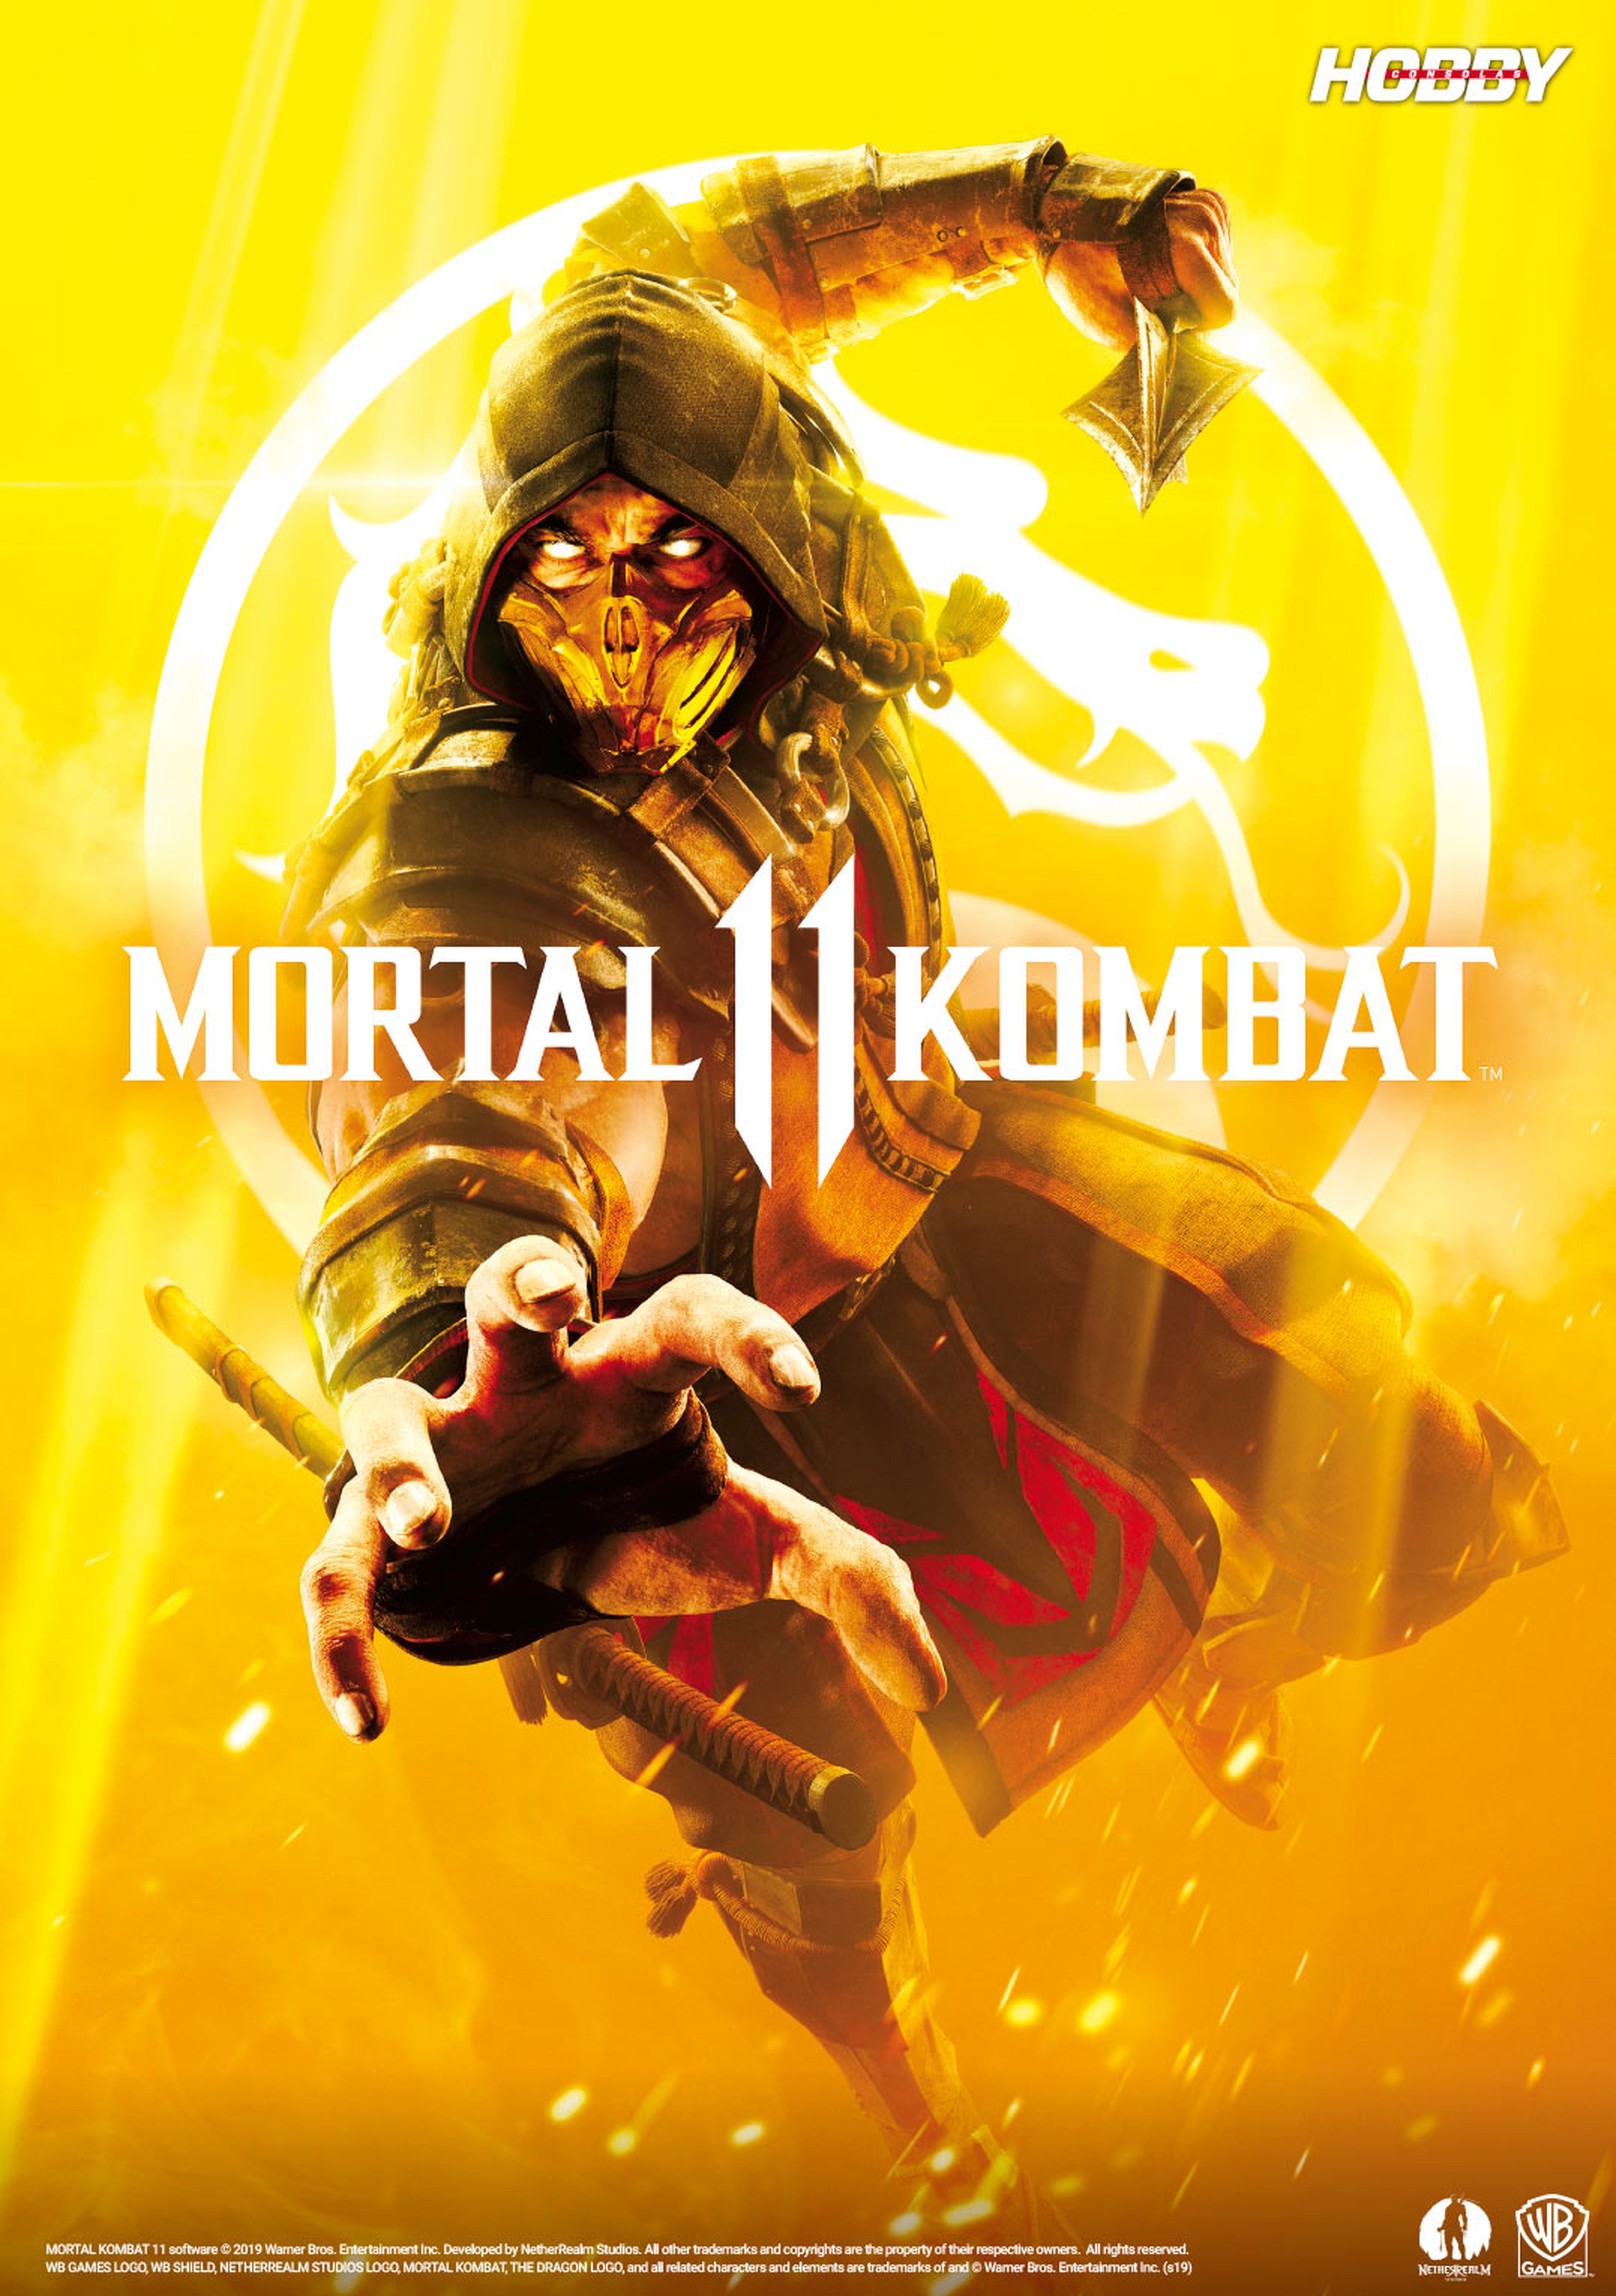 Hobby Consolas 334, a la venta con pósters de Sekiro y Mortal Kombat 11